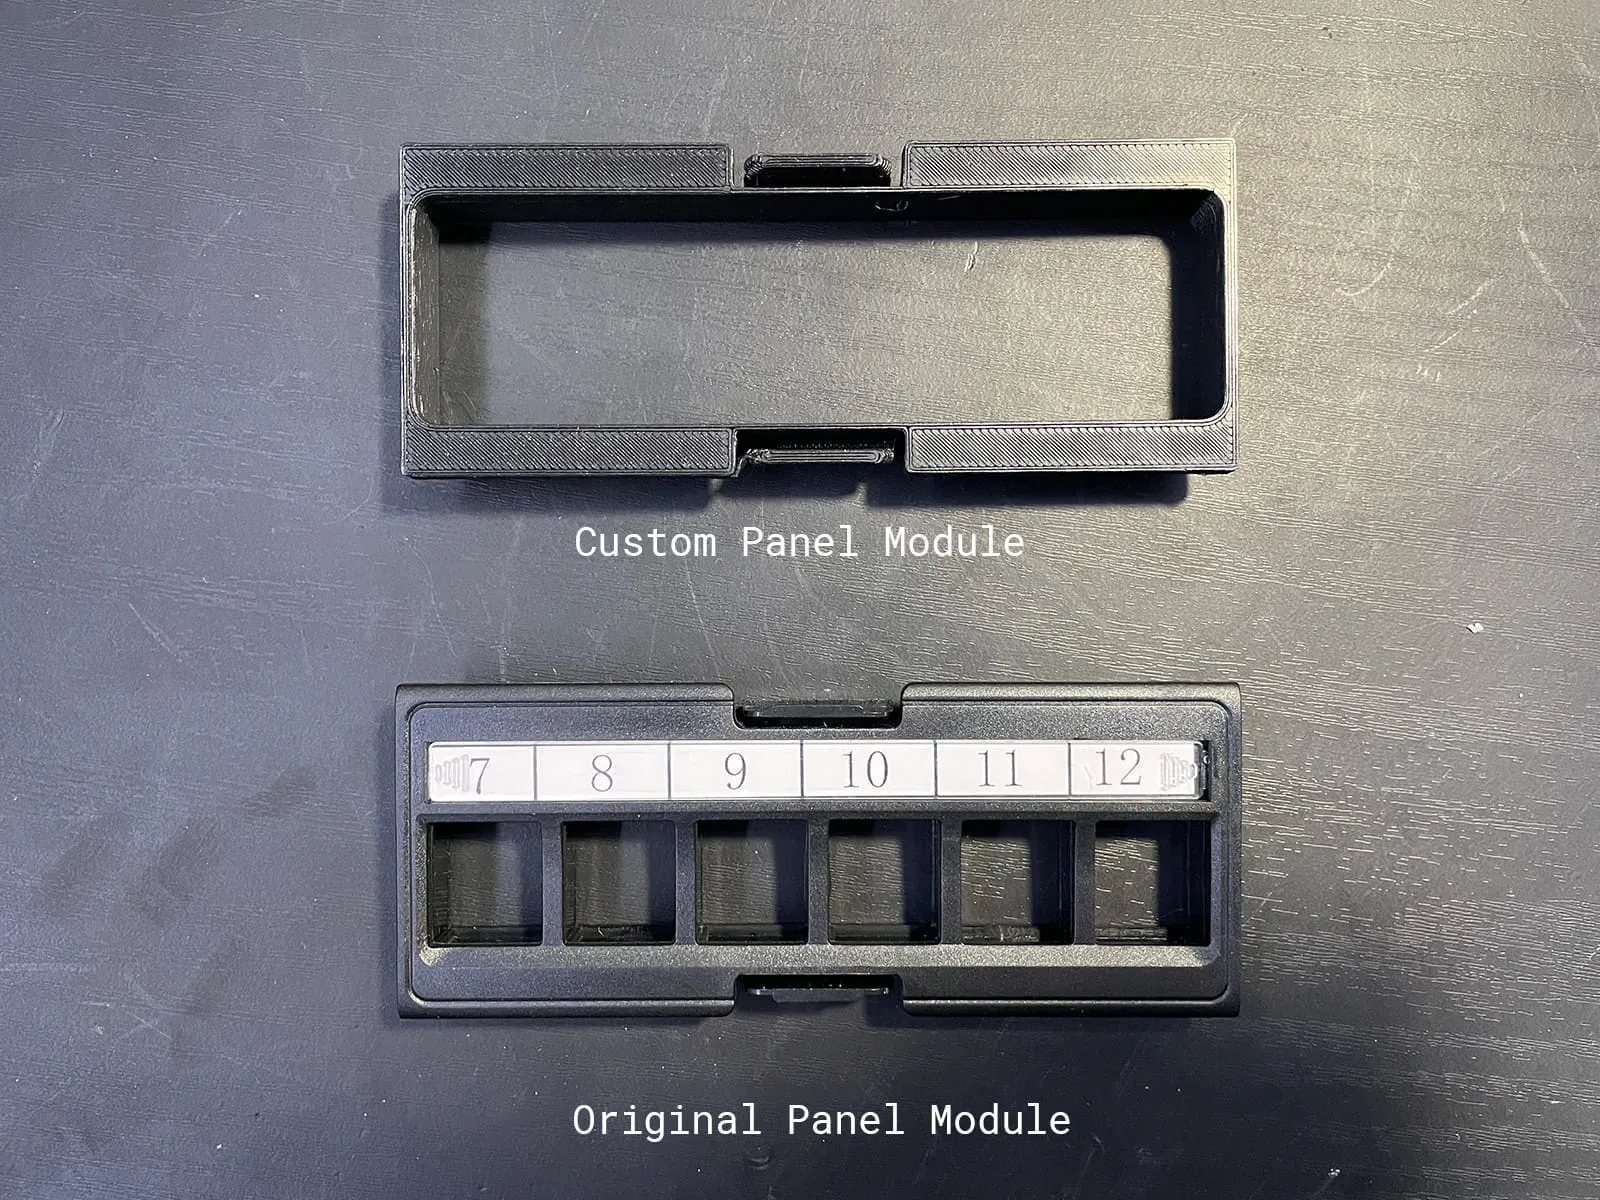 Custom printed and original panel modules